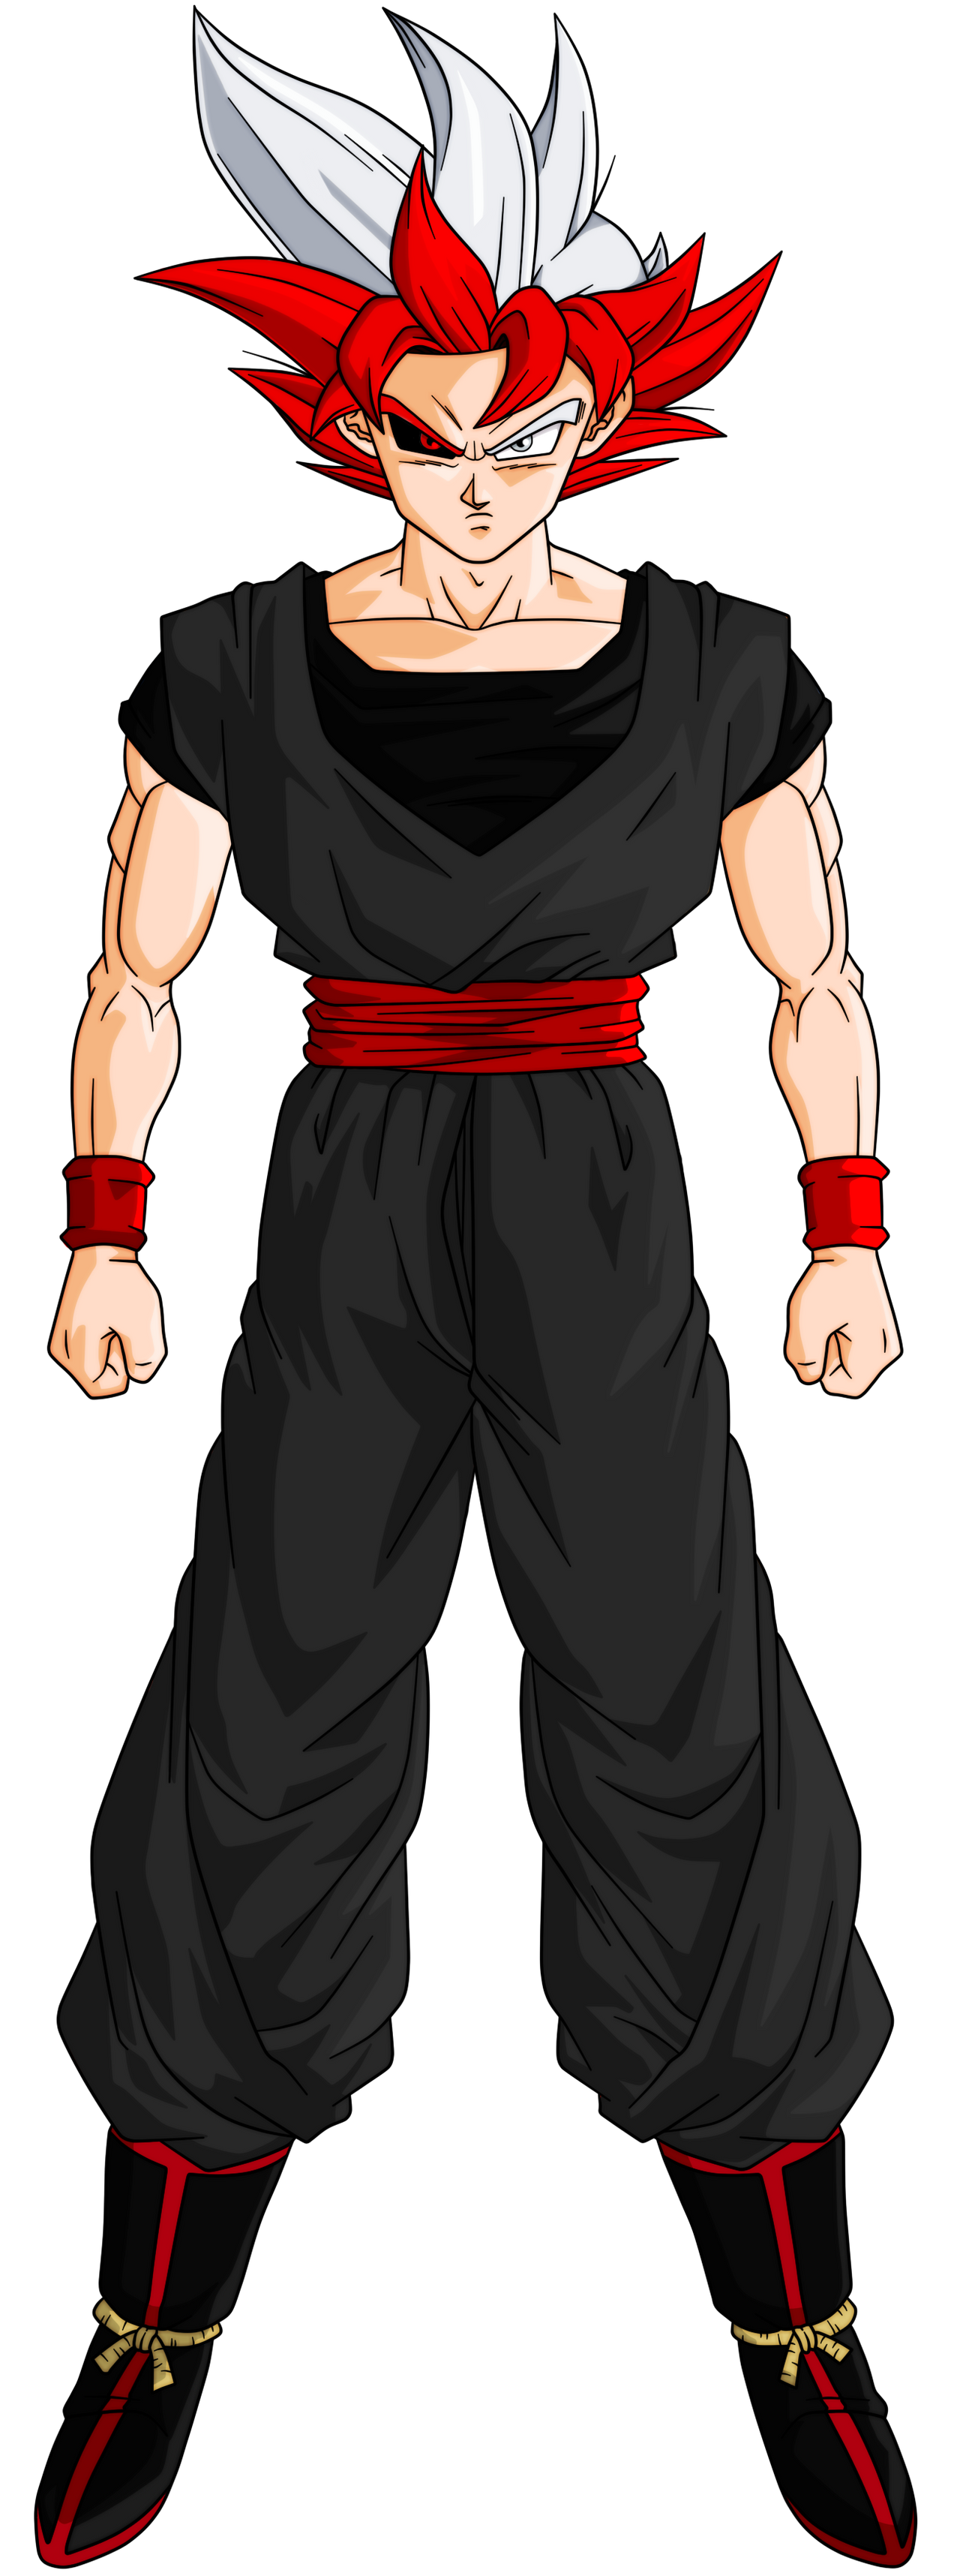 Goku Black SSJ4 V3 by Greytonano on DeviantArt